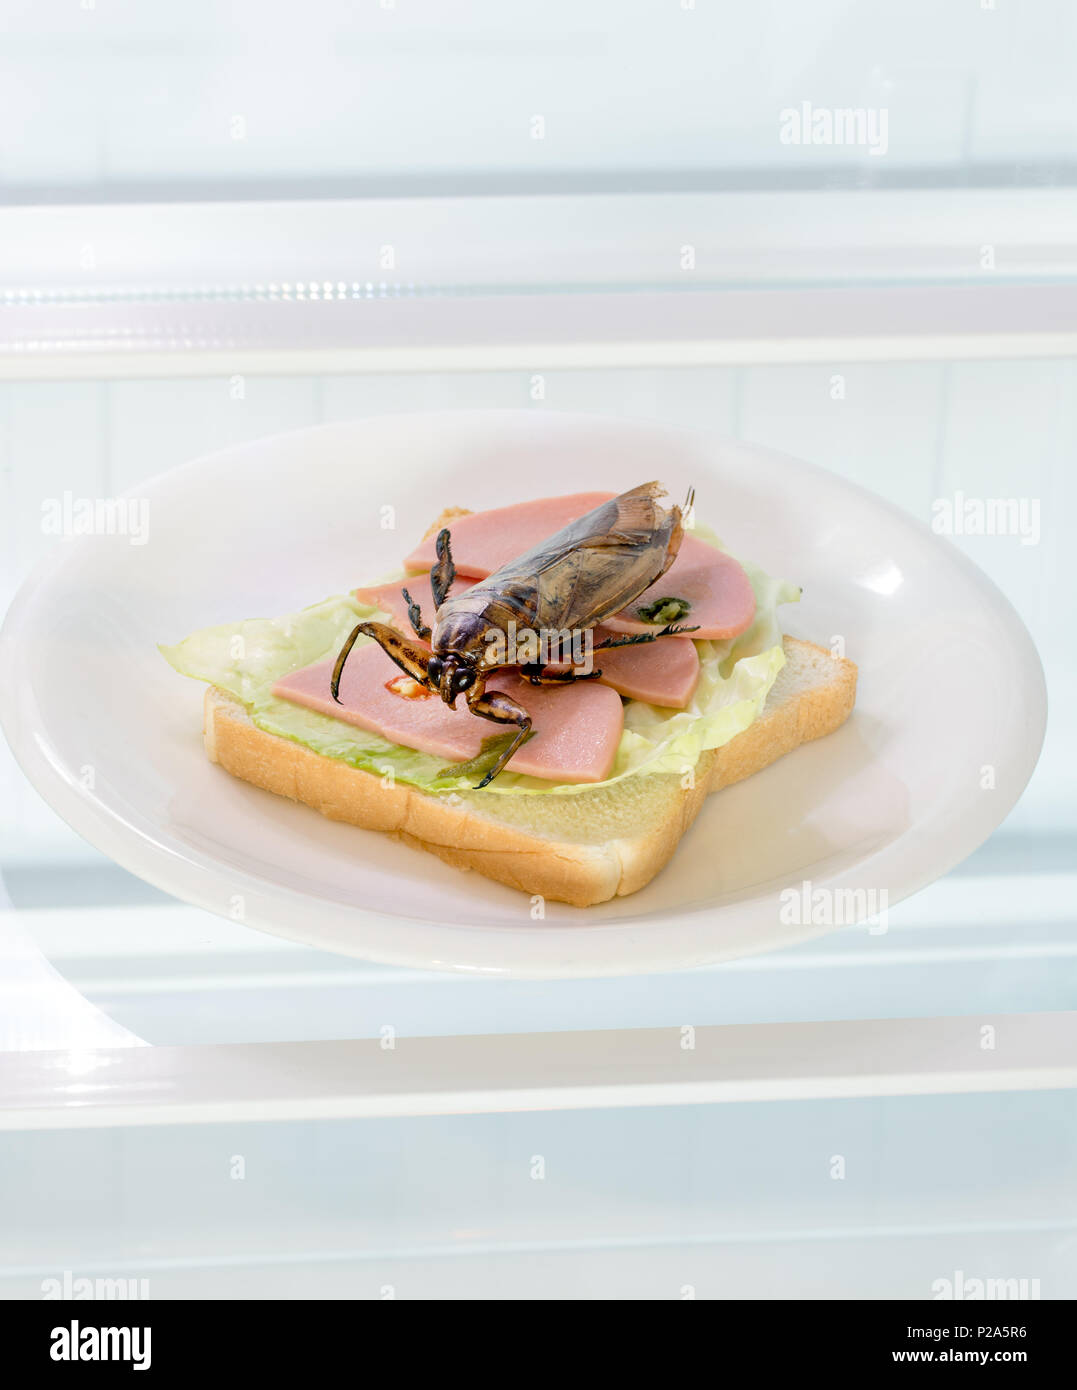 Abrir una nevera con un gran escarabajo sobre tostadas en la placa. Oferta de insectos comestibles - cucaracha frita en sándwich tostadas está enfriando en la nevera. Foto de stock